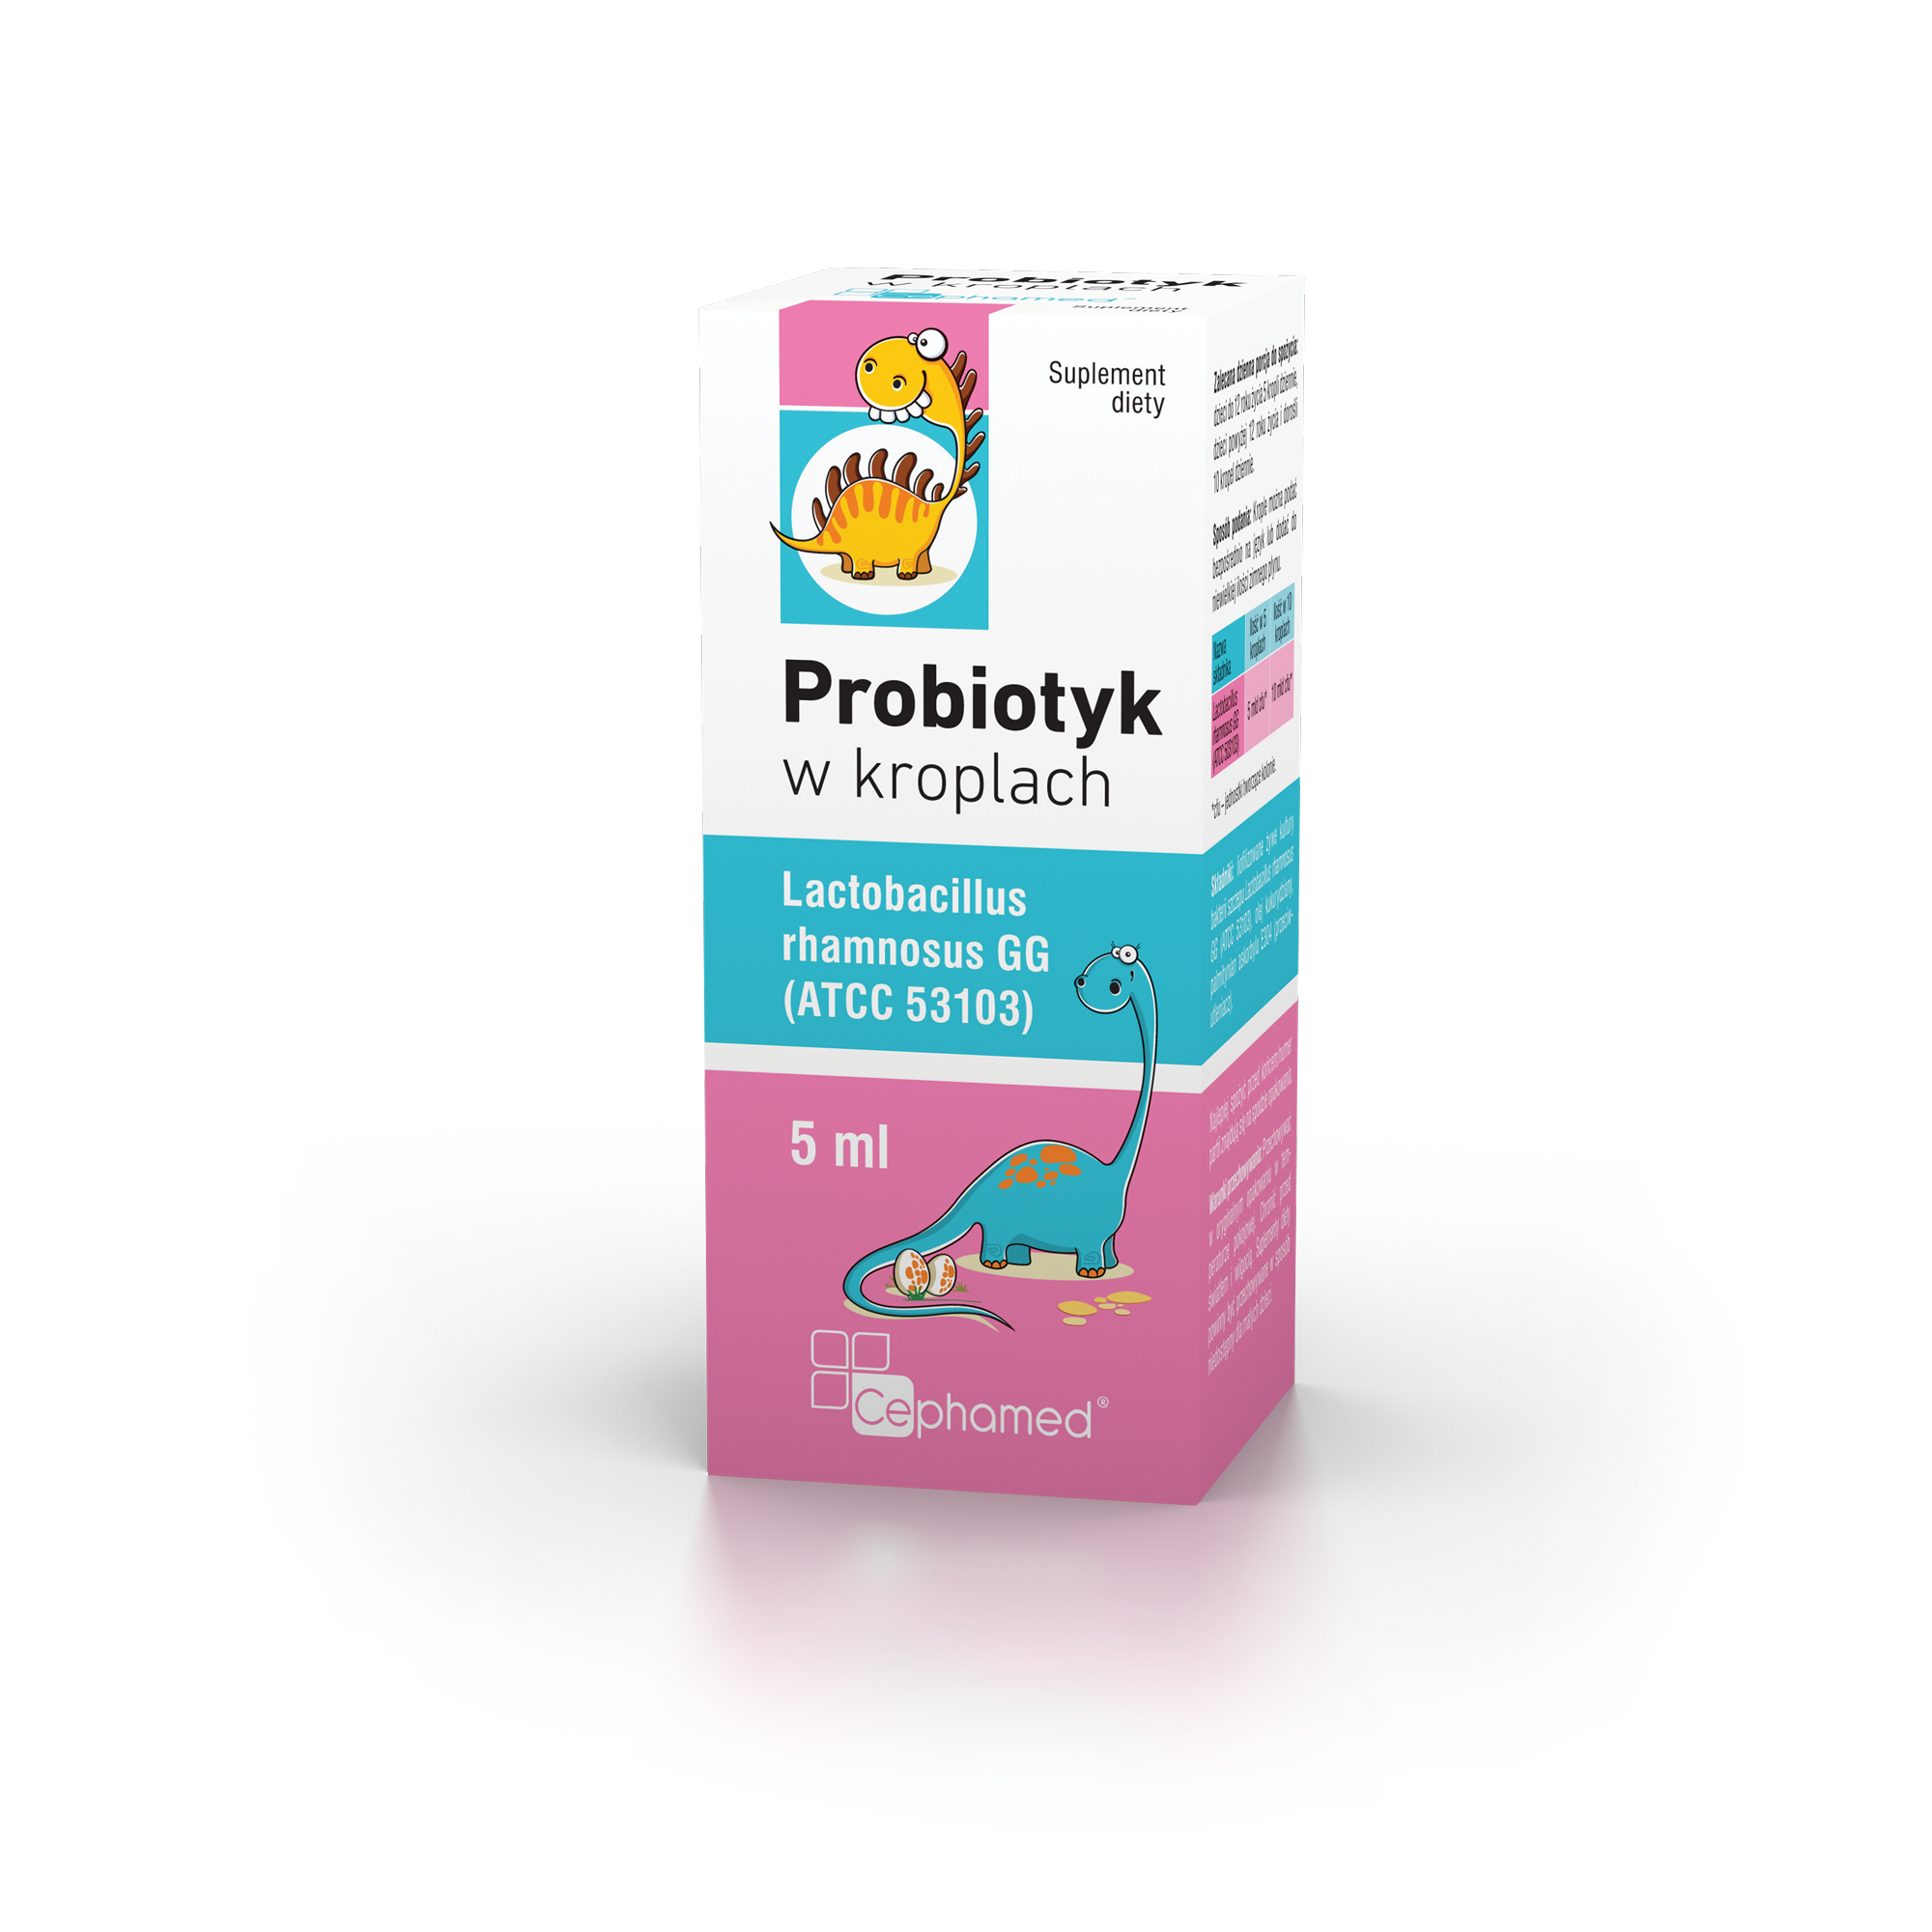 Probiotyk w kroplach